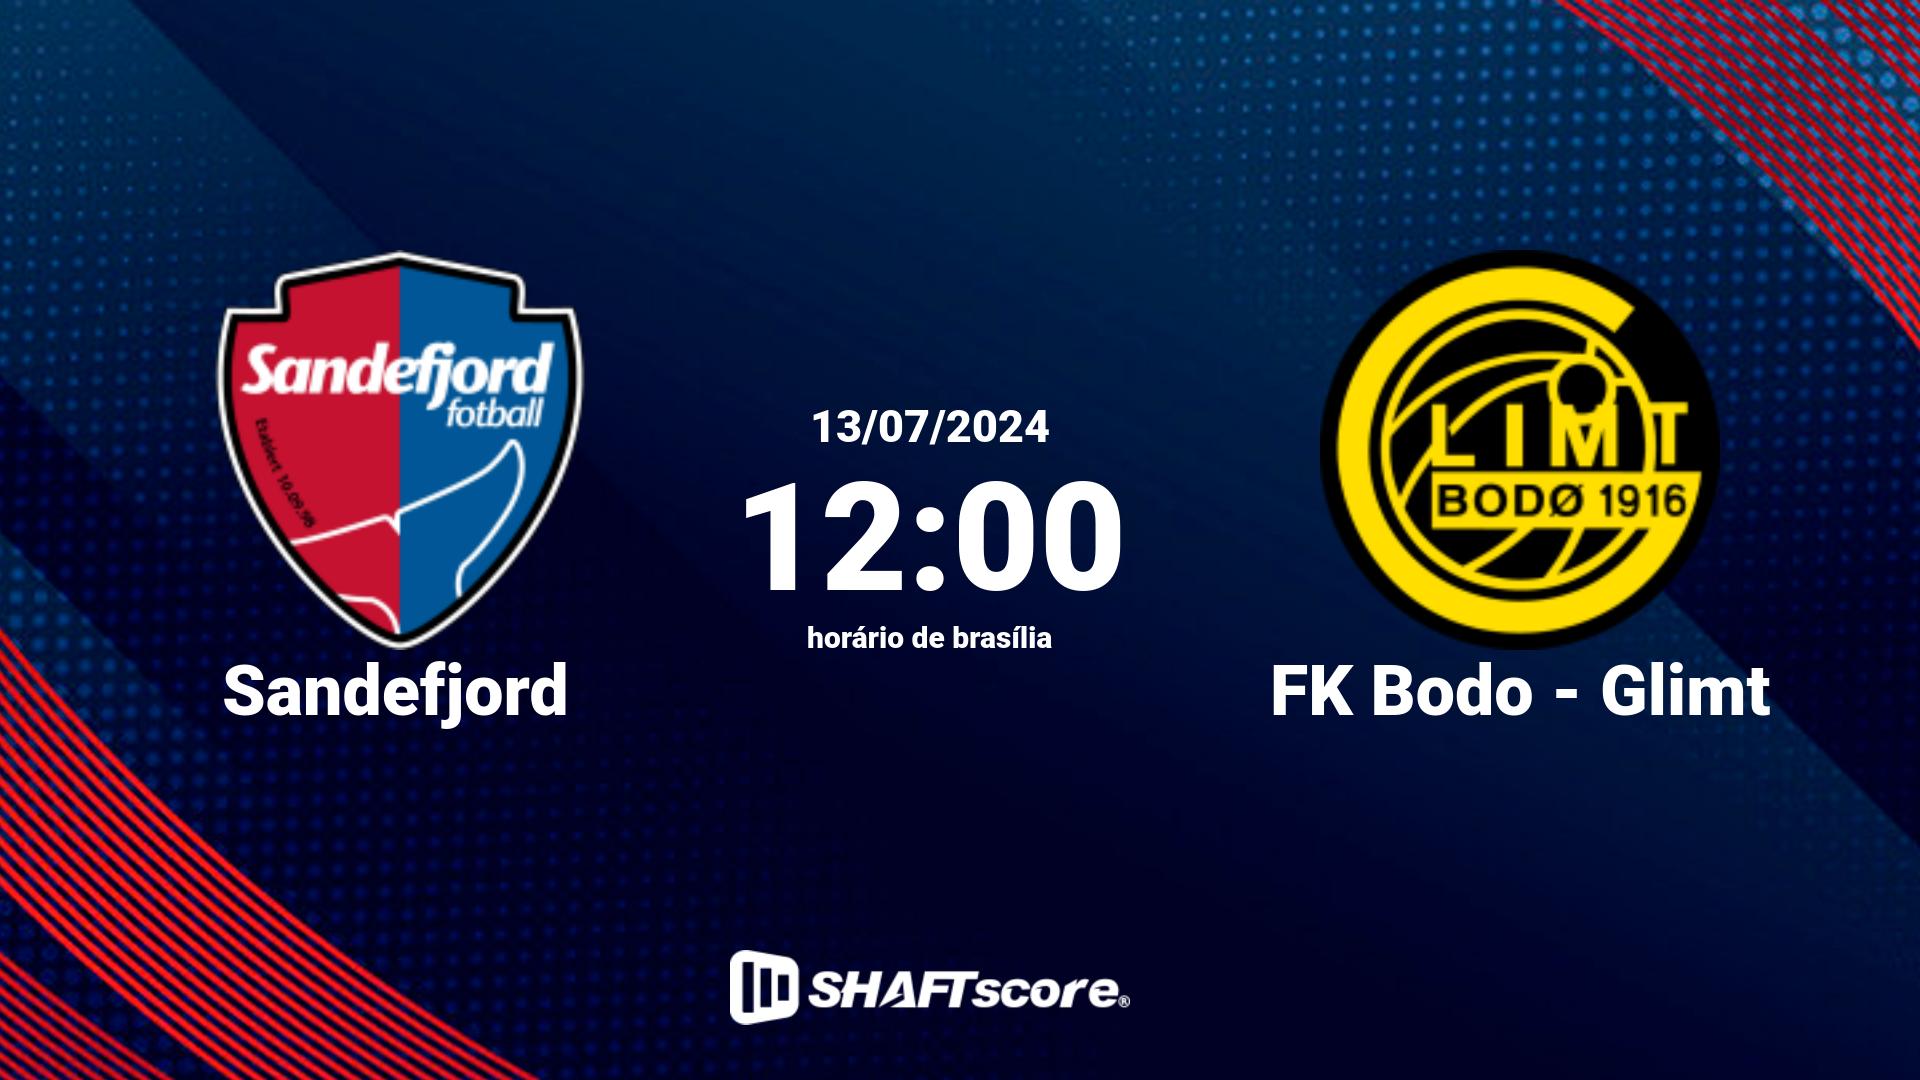 Estatísticas do jogo Sandefjord vs FK Bodo - Glimt 13.07 12:00